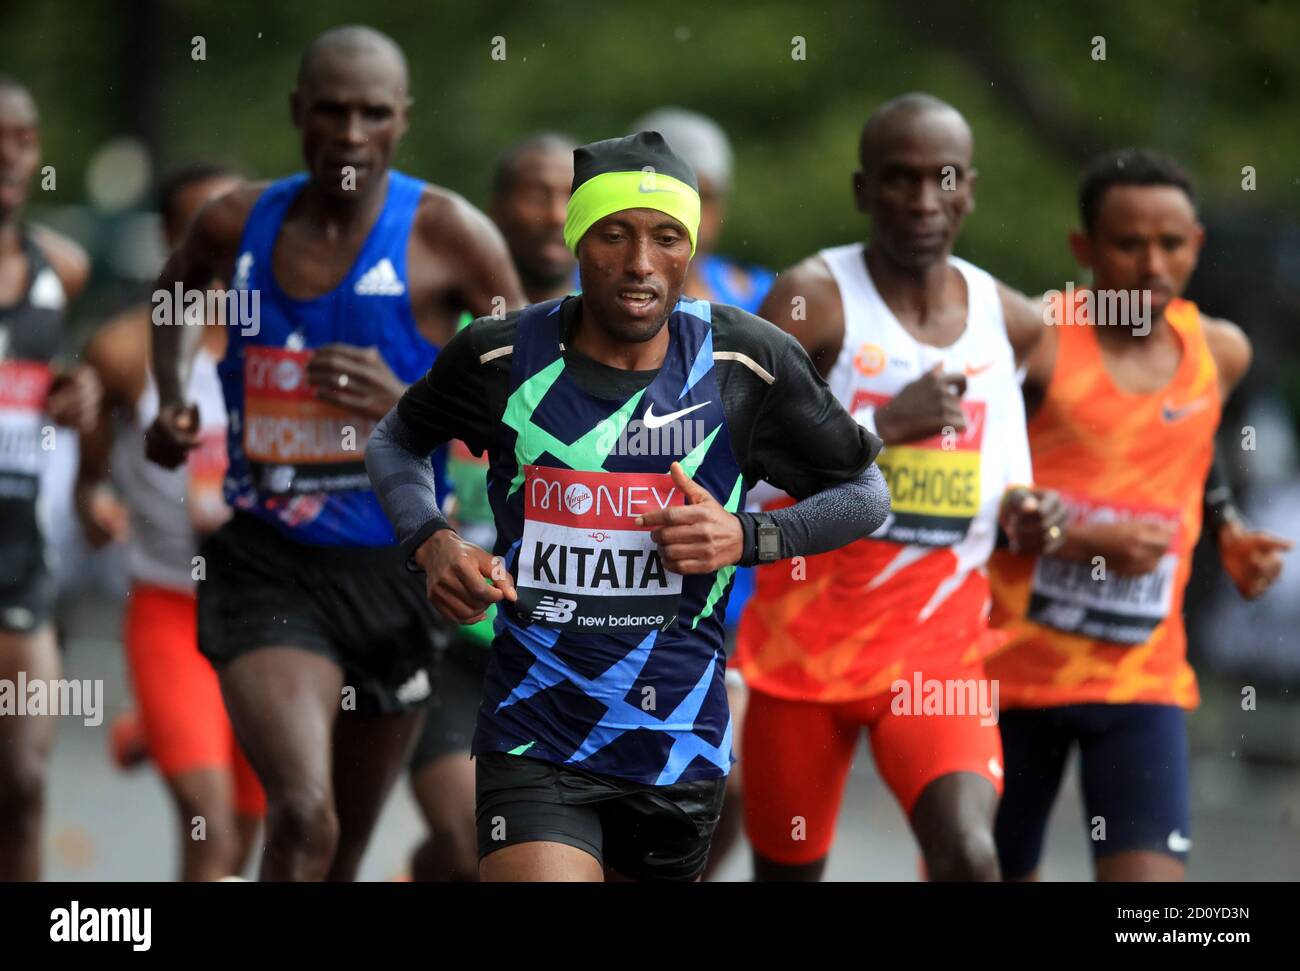 La Shura Kitata dell'Etiopia in azione durante la corsa Elite degli uomini durante la Maratona di Londra dei Virgin Money intorno al St James' Park. Foto Stock